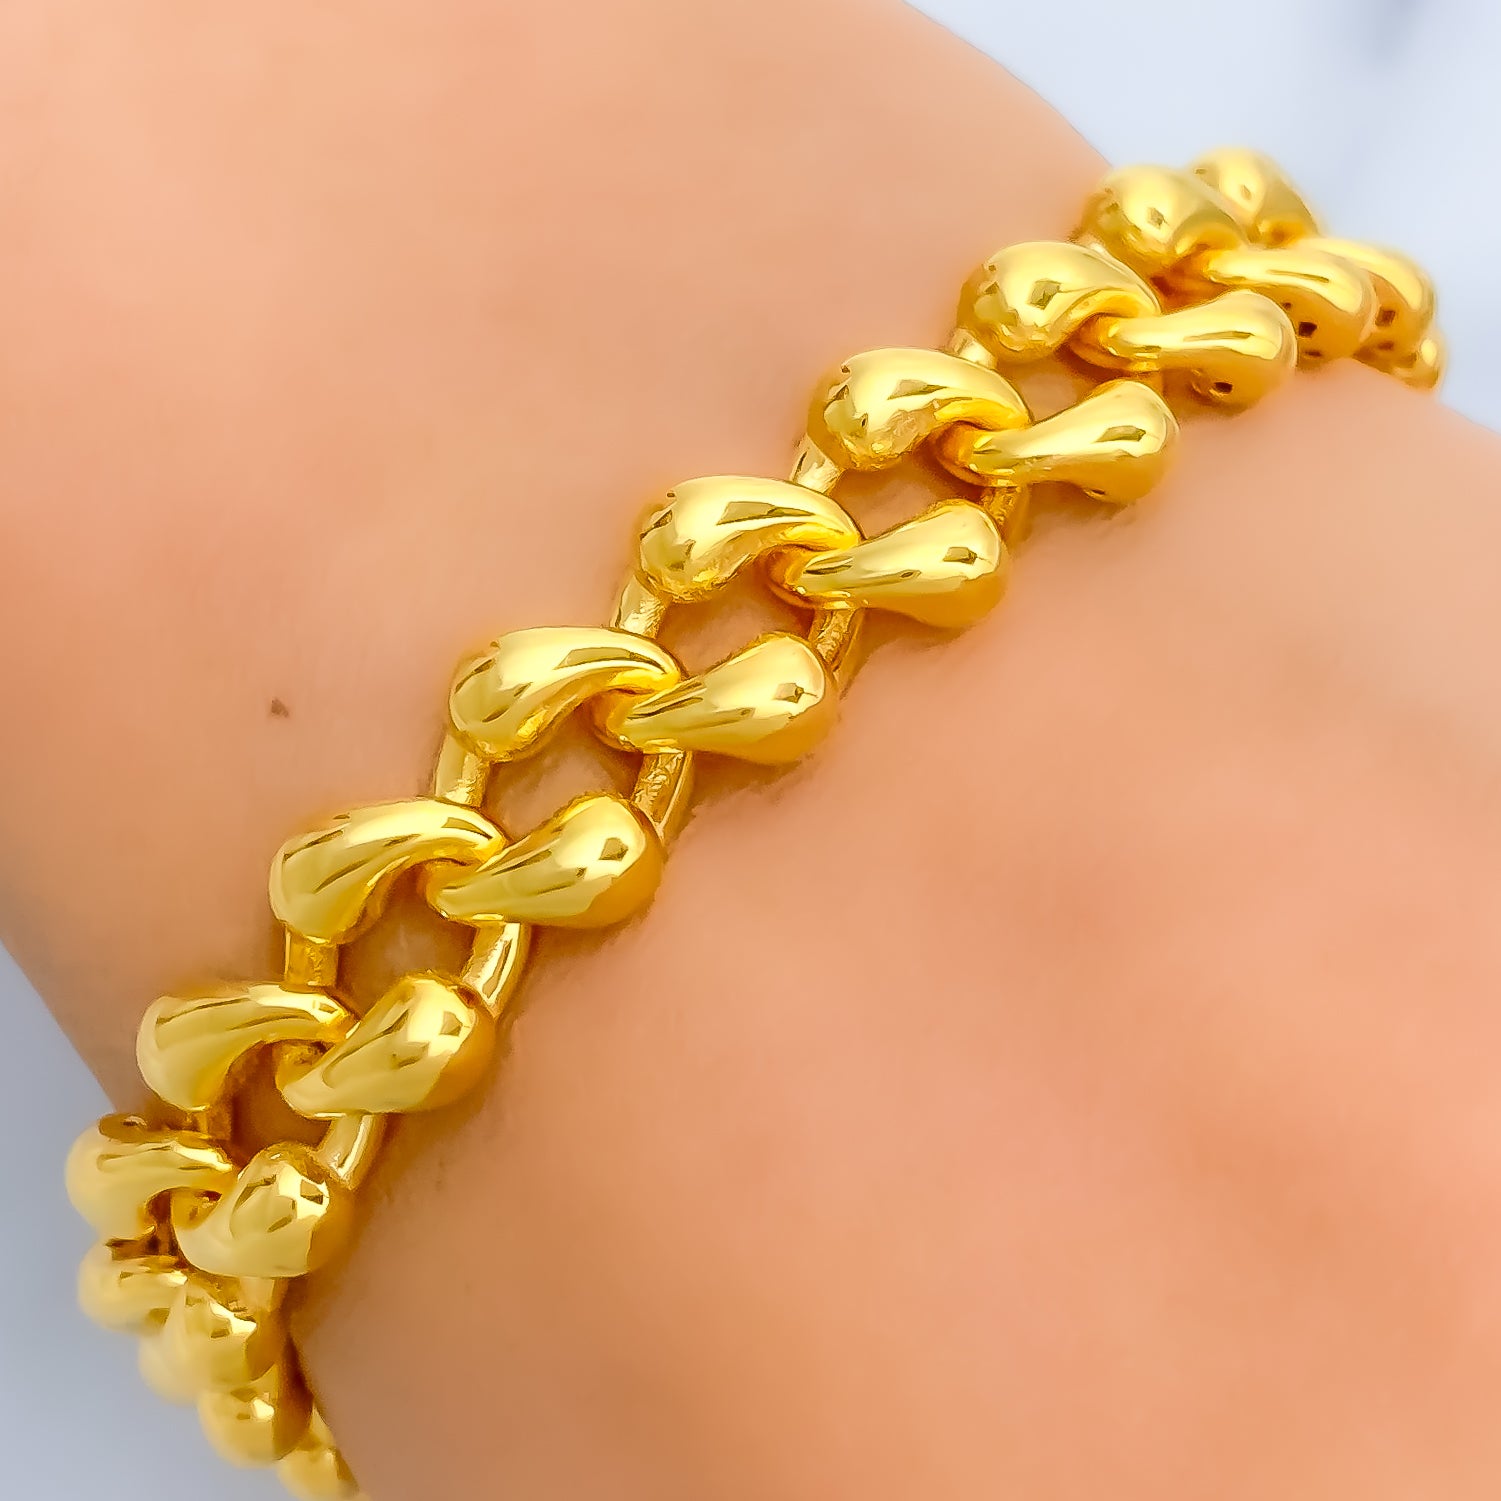 Har Har Mahadev Trishul rudraksha 22k Gold Plated Chain Bracelet-A Div